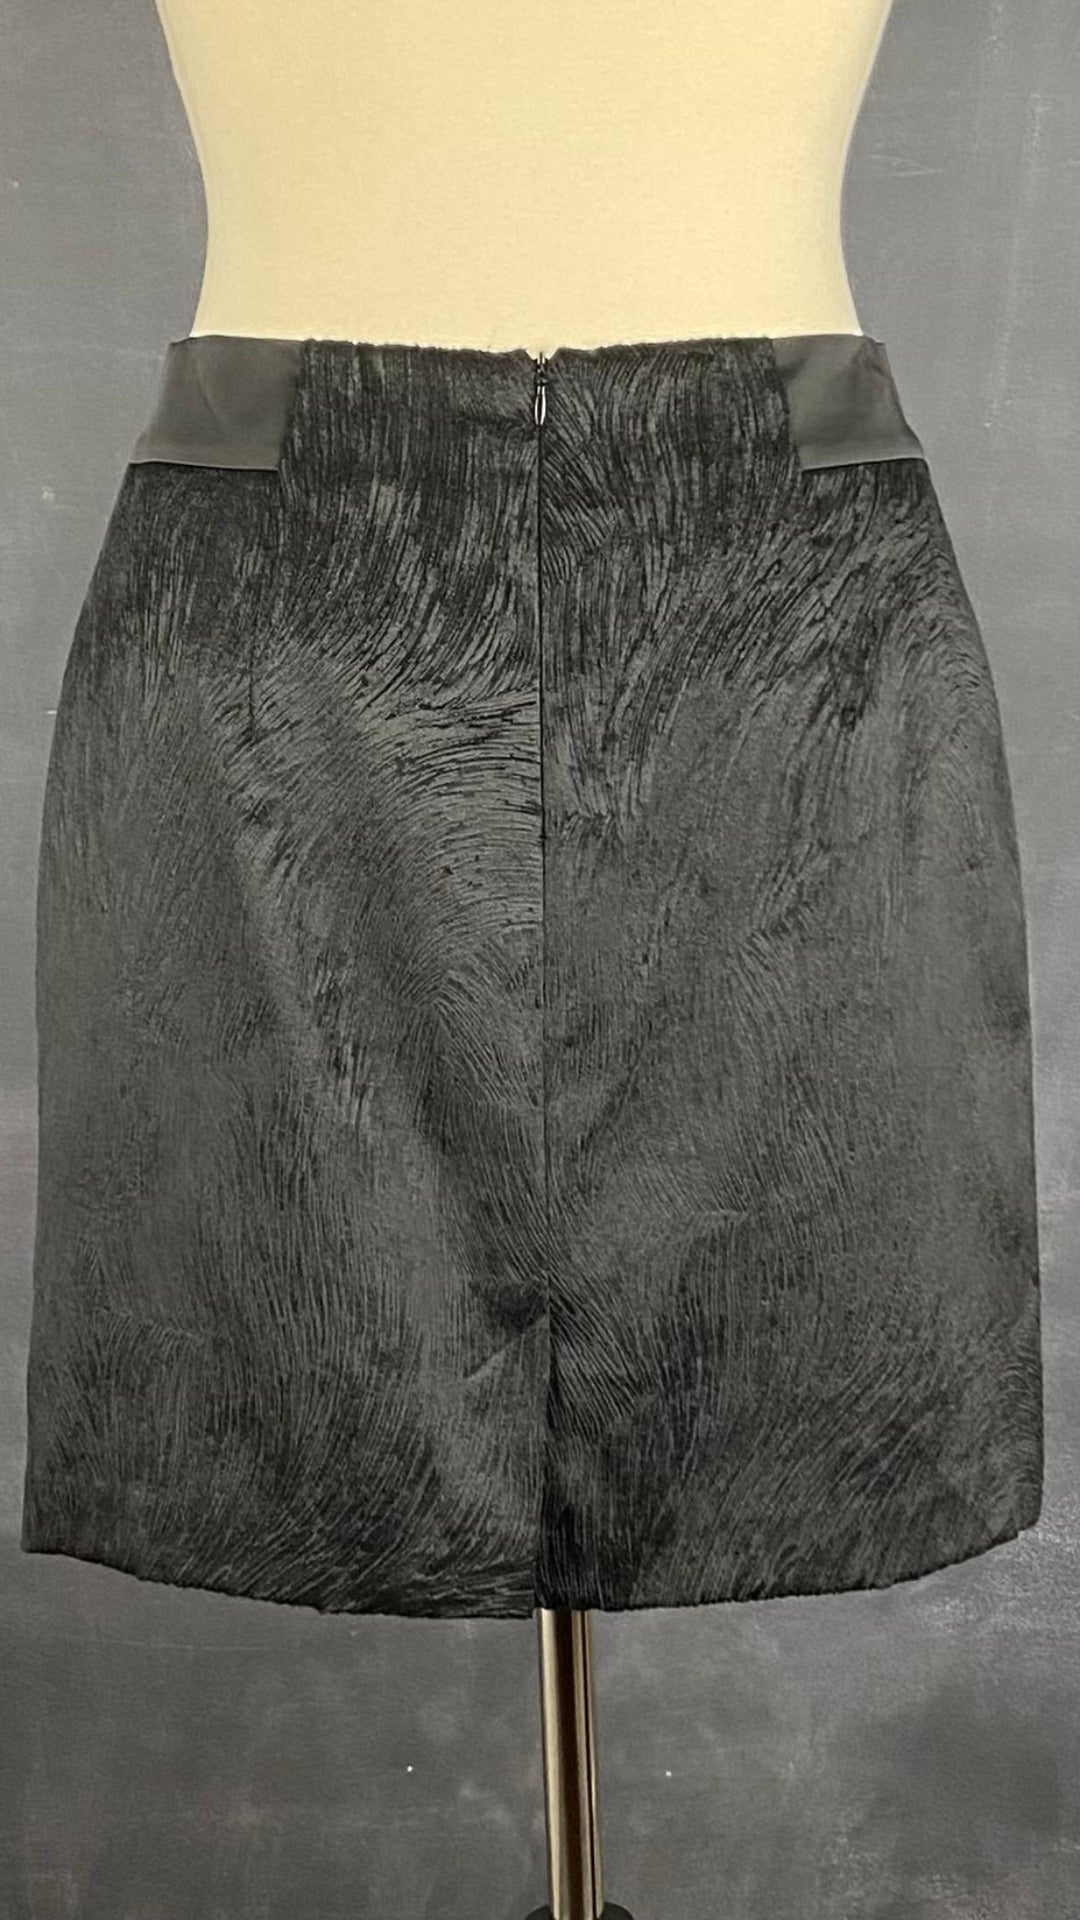 Jupe noire chic texturée Tristan, taille 6. Vue de dos.